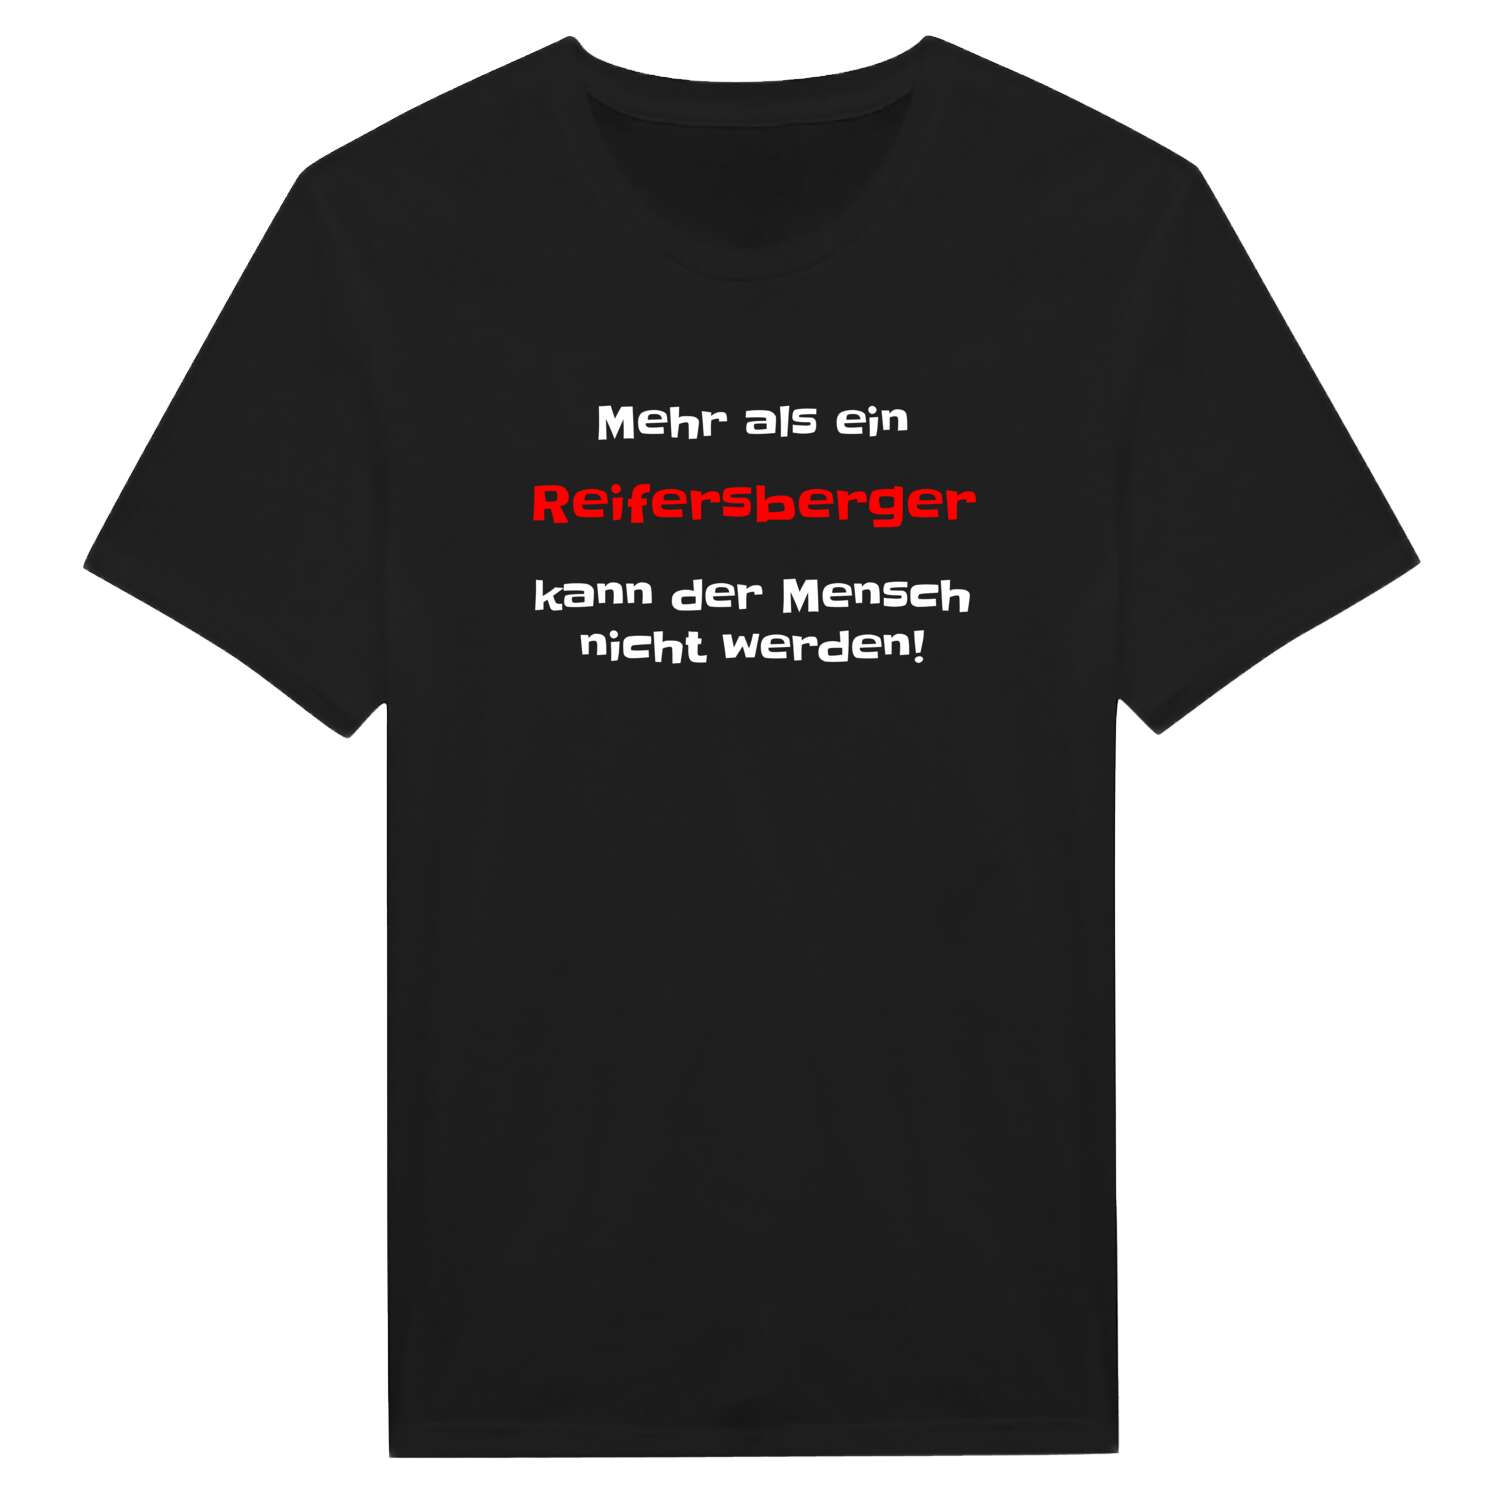 Reifersberg T-Shirt »Mehr als ein«